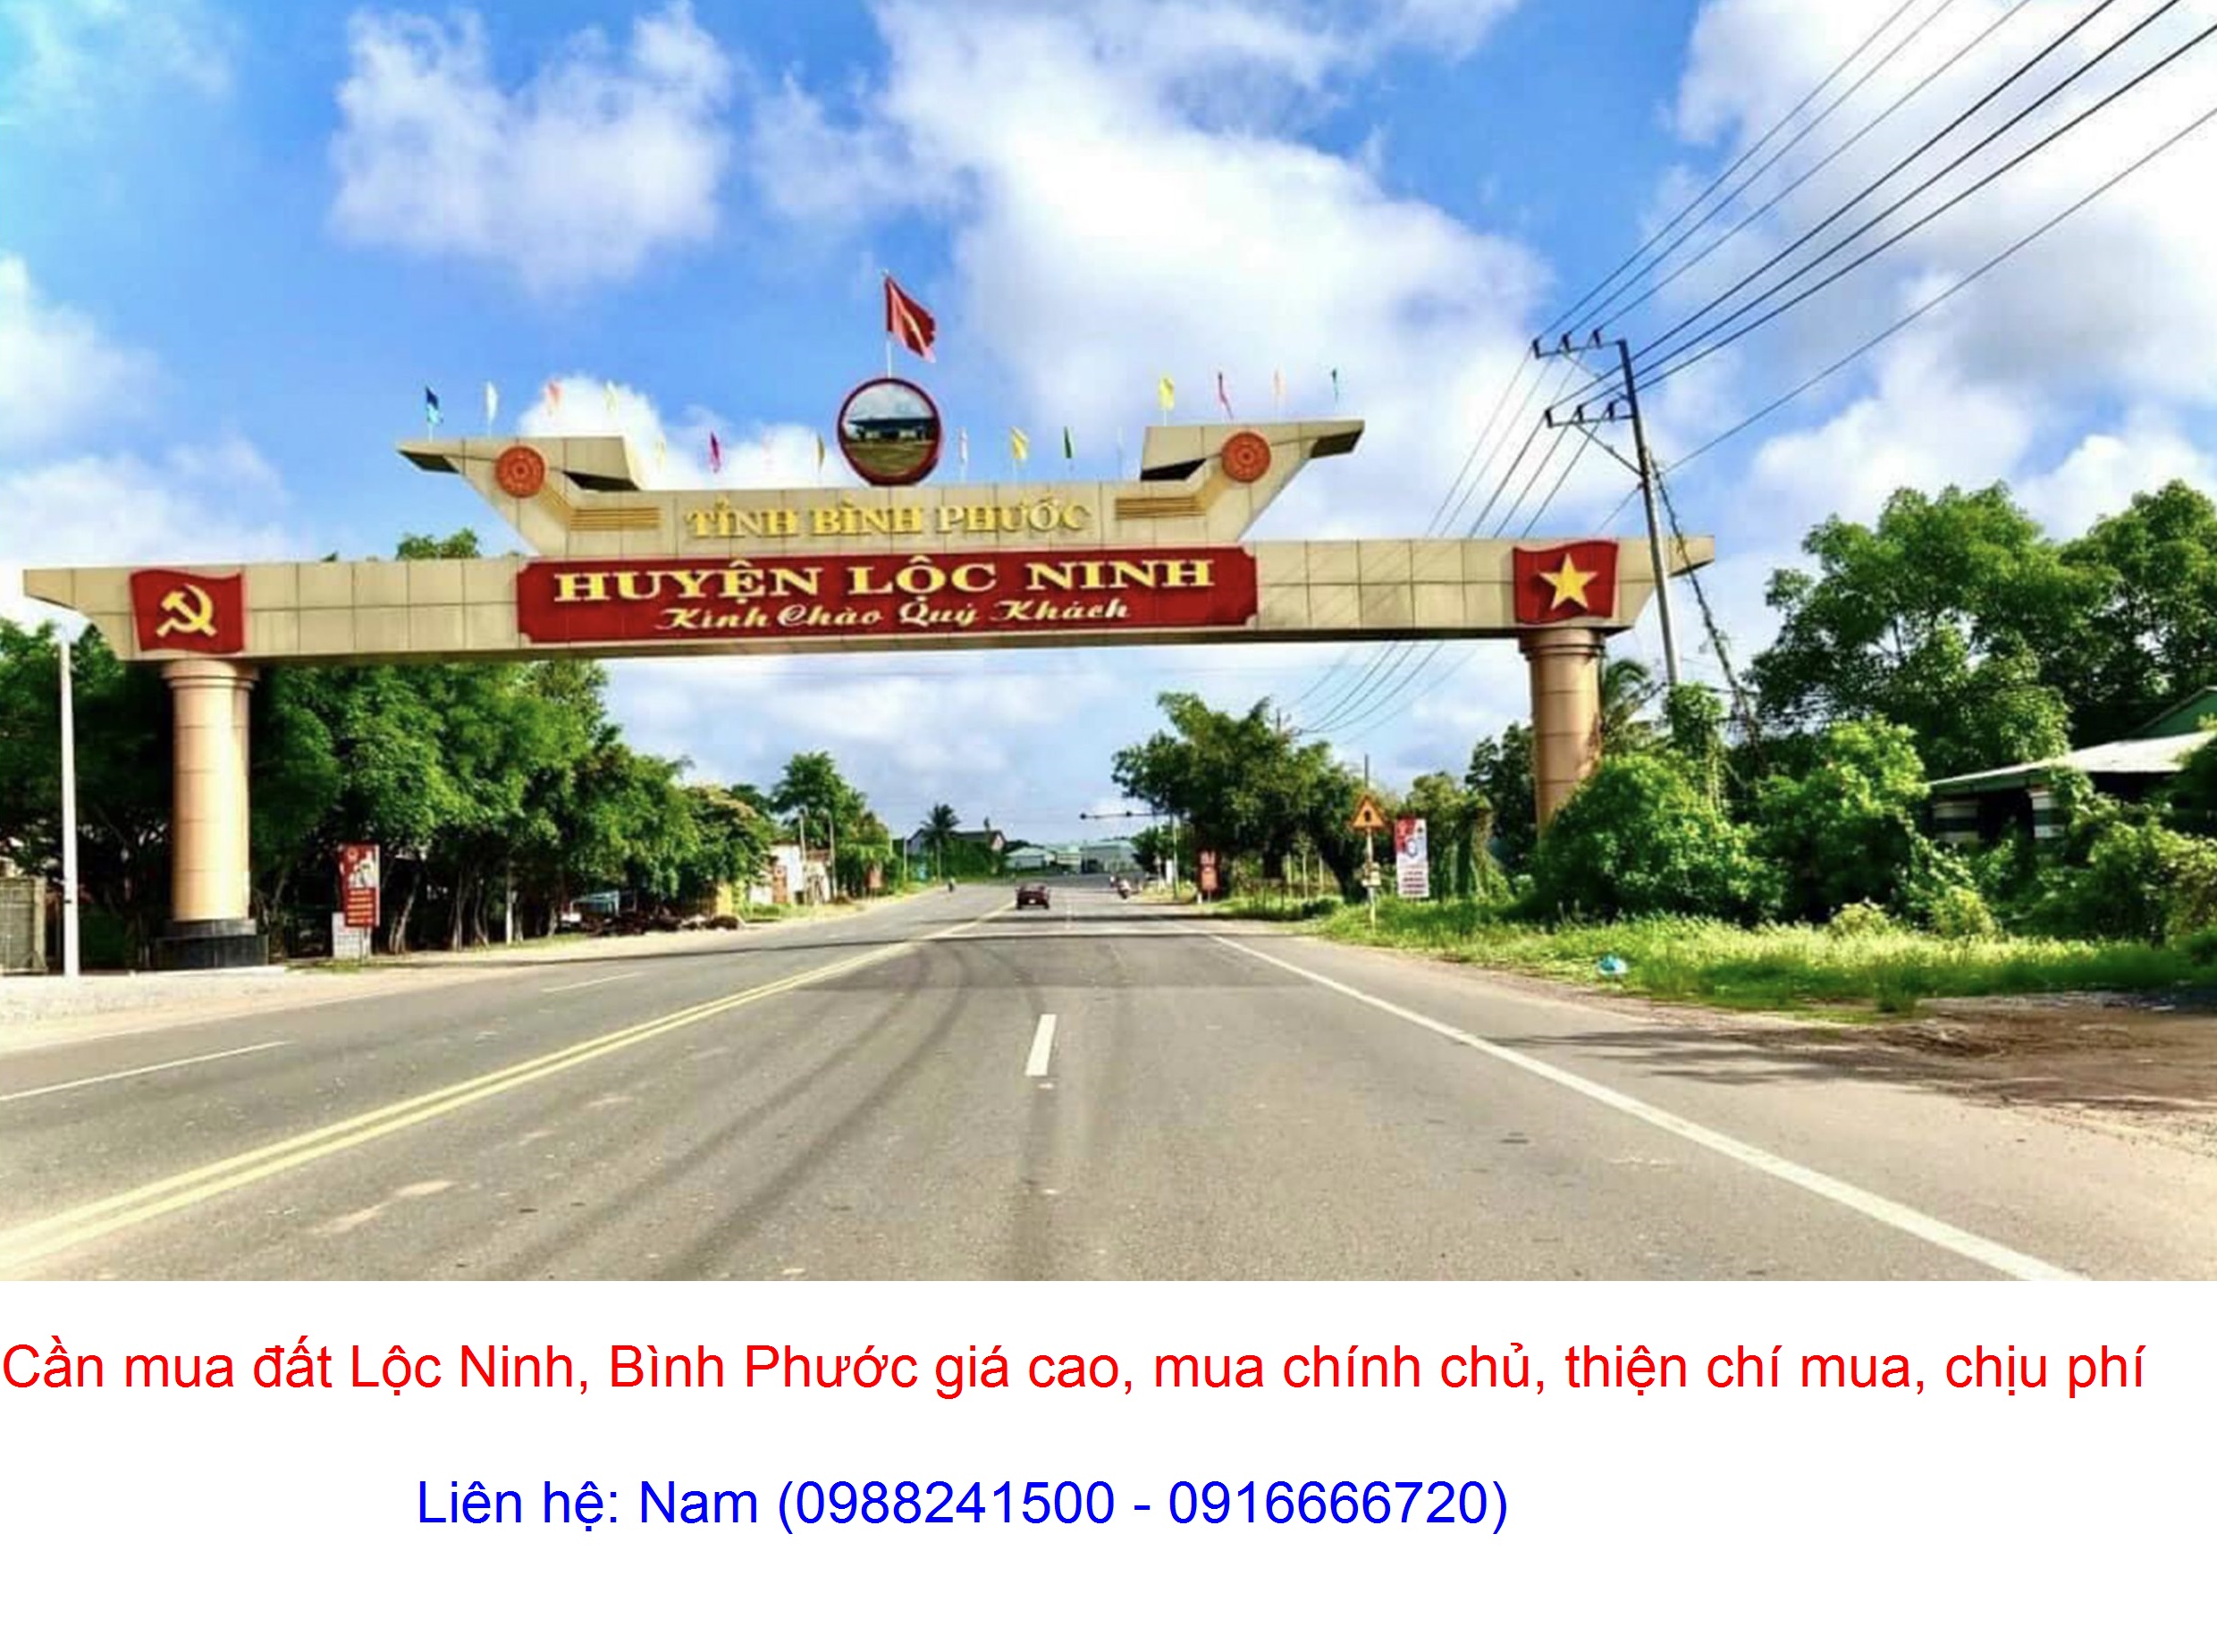 Mua đất xã Lộc Thành, Lộc Ninh giá cao, mua chính chủ, thiện chí